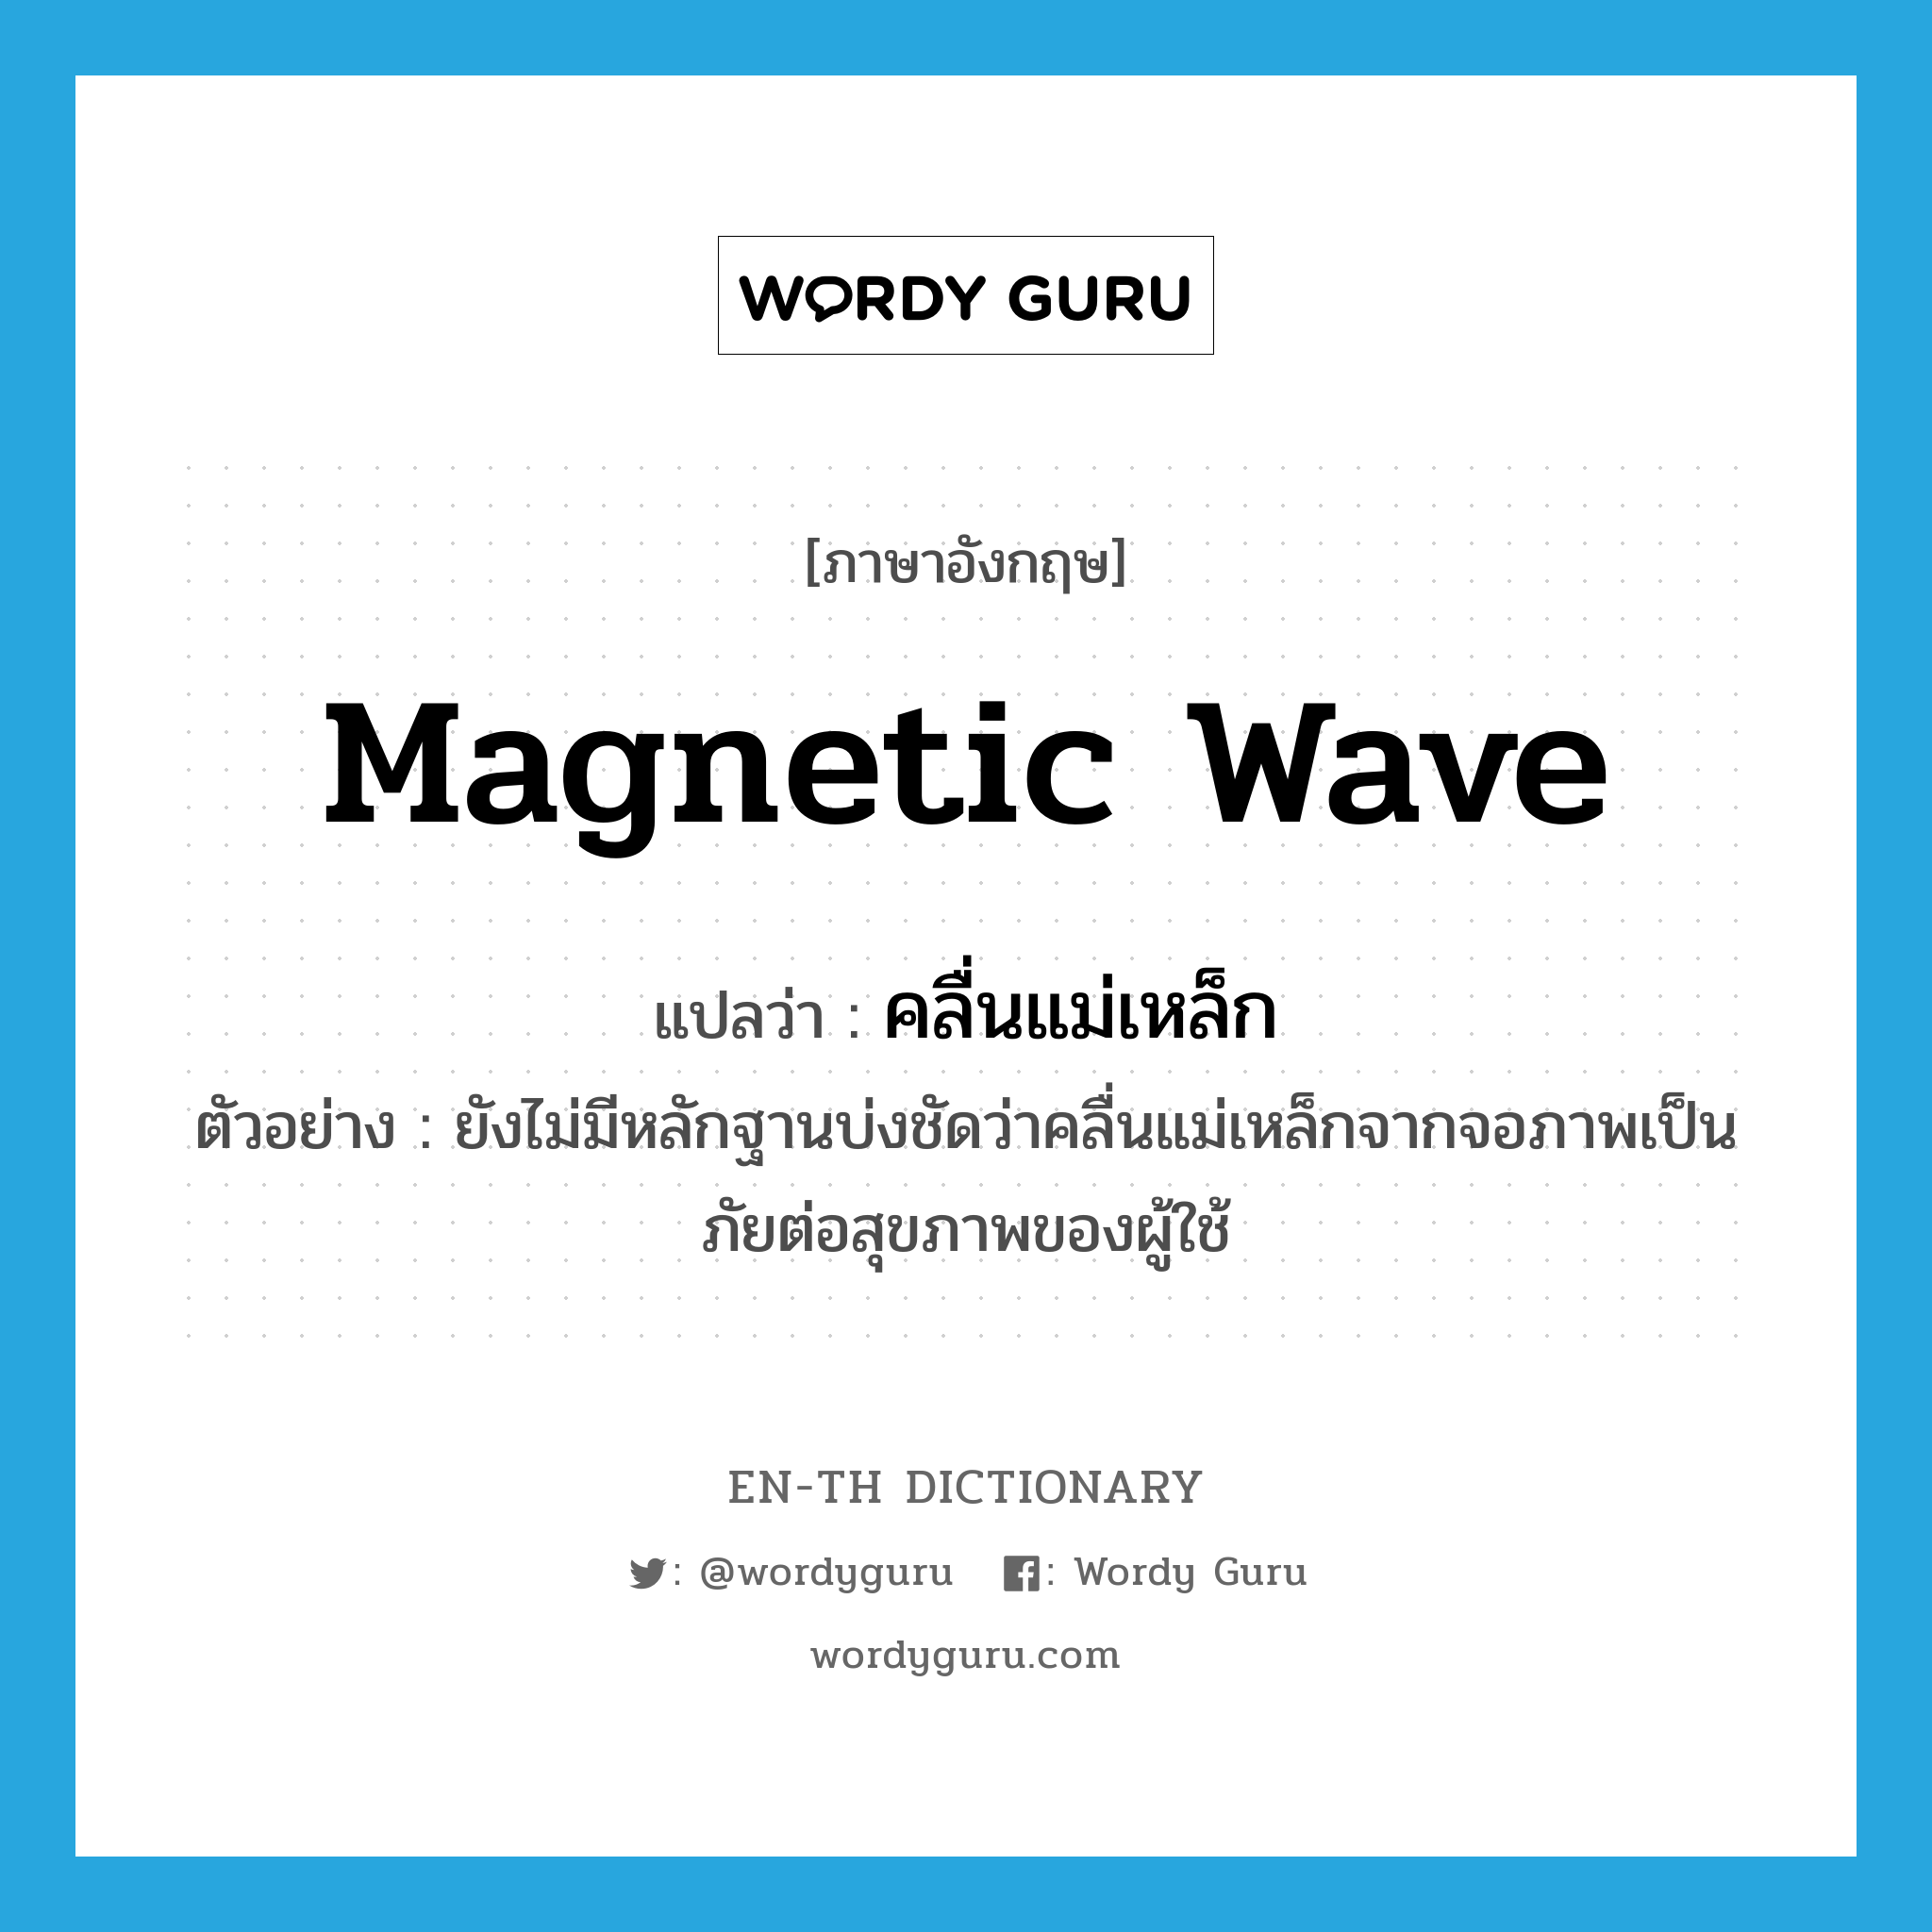 magnetic wave แปลว่า?, คำศัพท์ภาษาอังกฤษ magnetic wave แปลว่า คลื่นแม่เหล็ก ประเภท N ตัวอย่าง ยังไม่มีหลักฐานบ่งชัดว่าคลื่นแม่เหล็กจากจอภาพเป็นภัยต่อสุขภาพของผู้ใช้ หมวด N